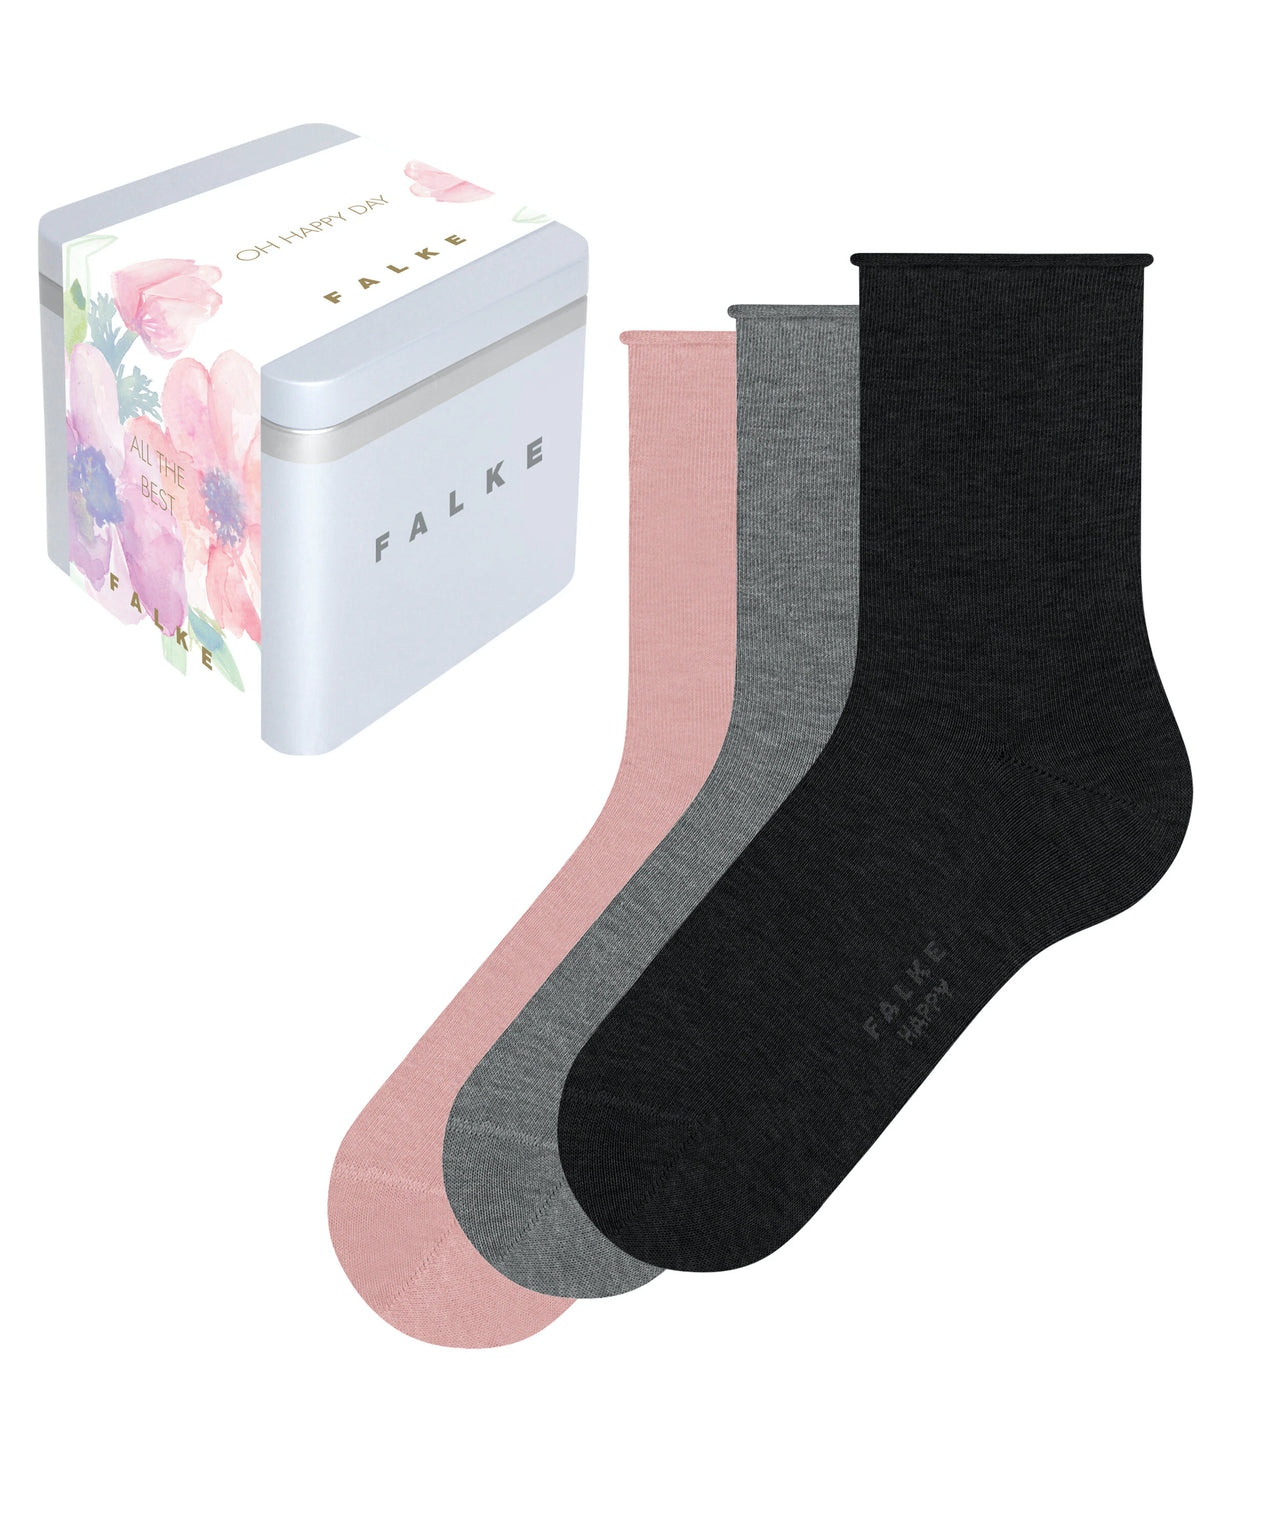 Falke Women's Giftbox 3 Pack Socks